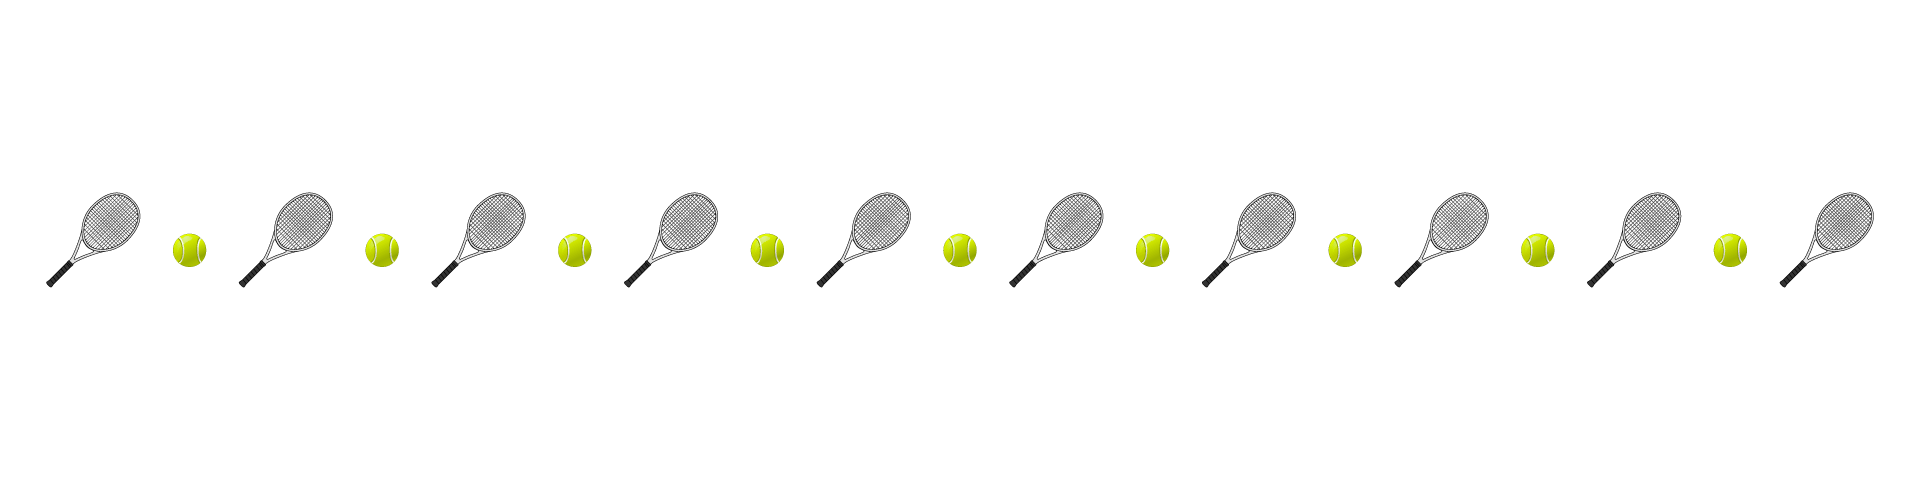 テニスのライン線 イラスト素材 超多くの無料かわいいイラスト素材